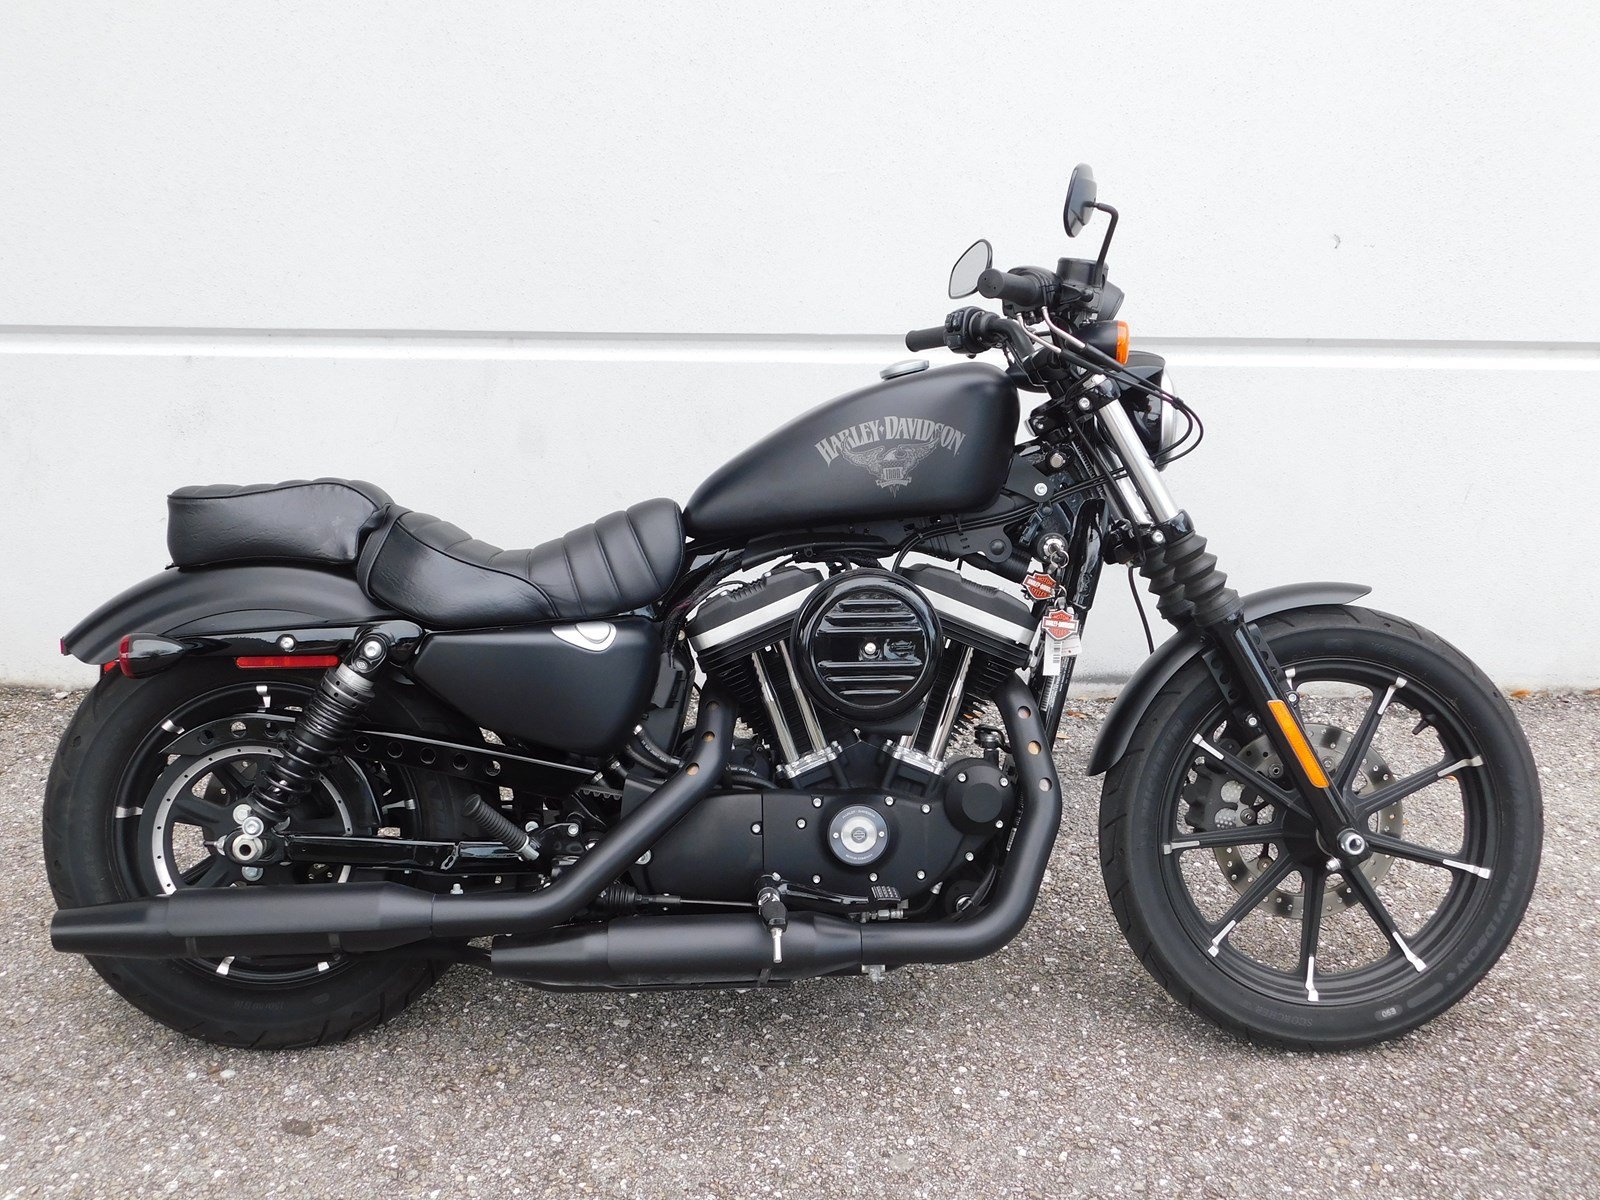 Harley Davidson 2019 Iron 883 Price Inspirasi Terpopuler